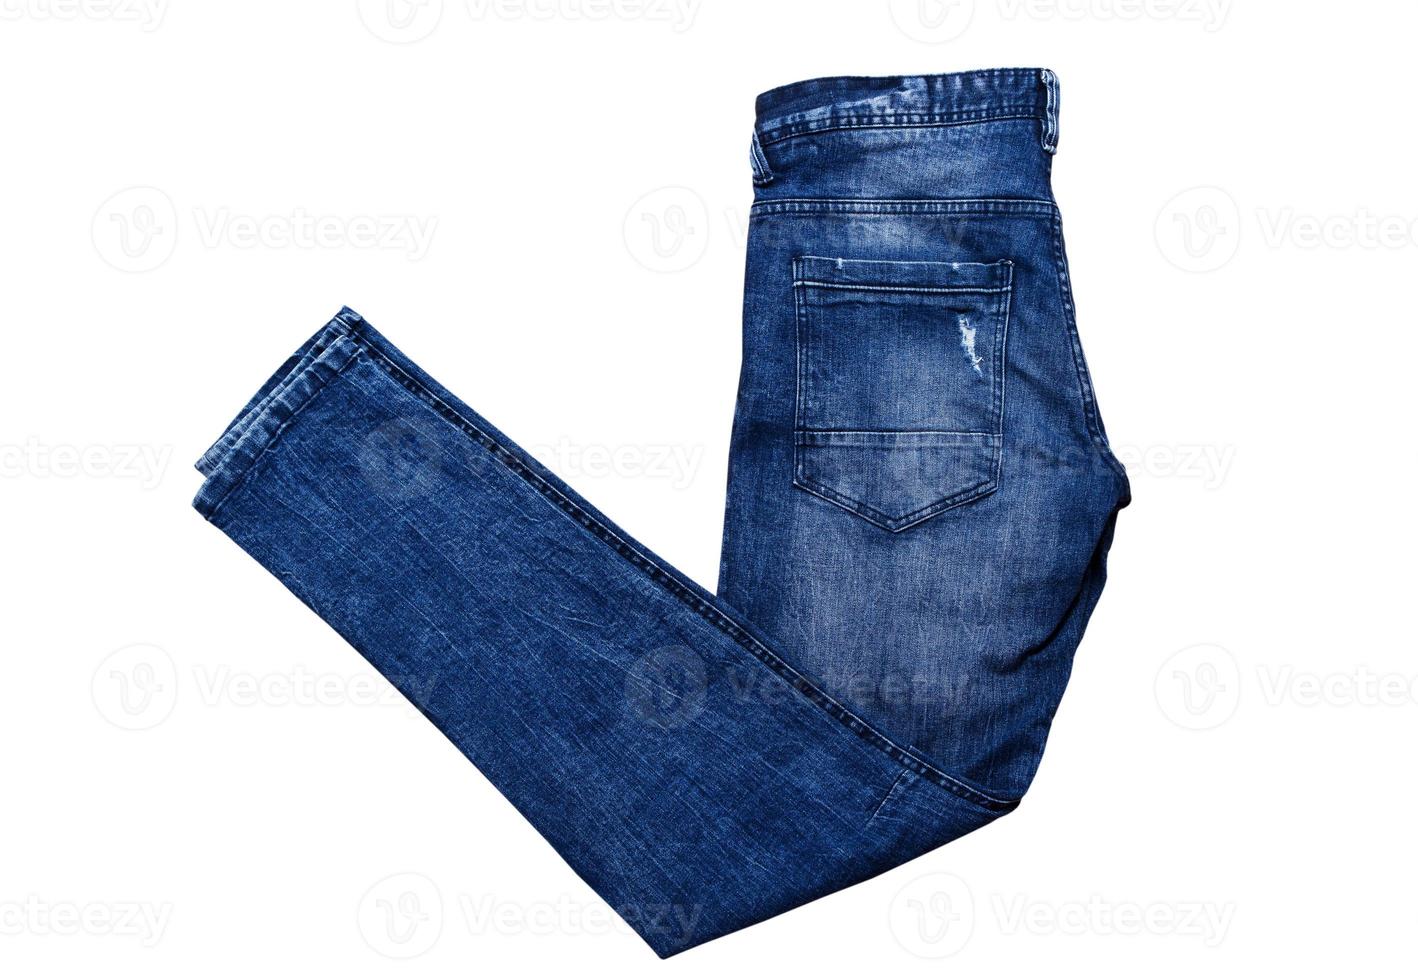 Jeans de Moda Pantalon Para Hombre Pantalones De Mezclilla Calças  Masculinas